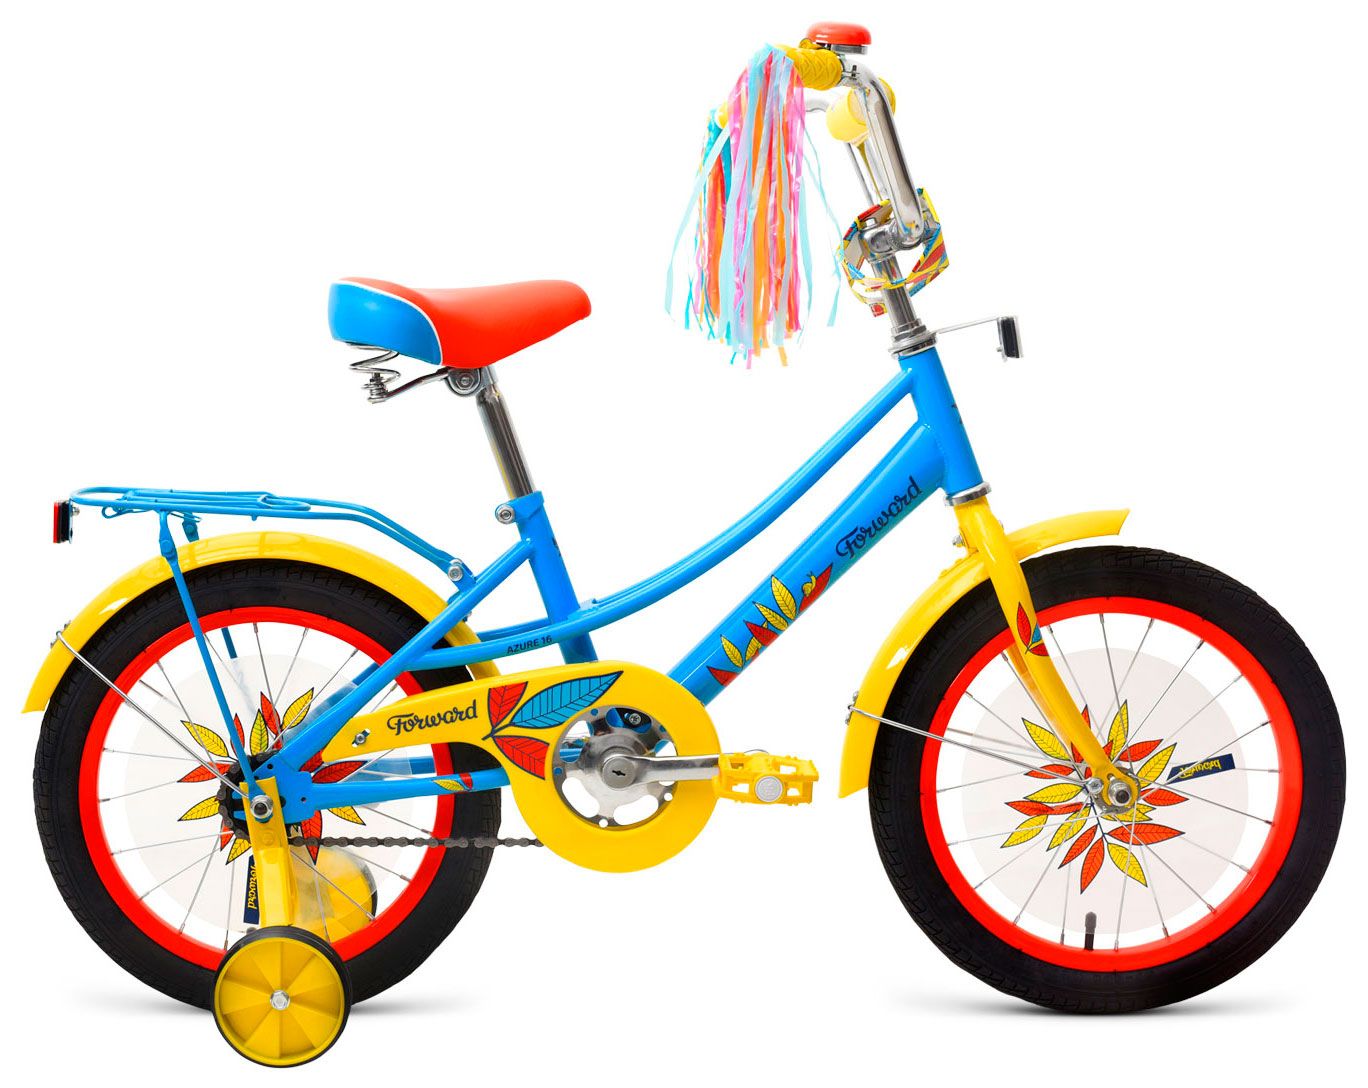  Отзывы о Трехколесный детский велосипед Forward Azure 16 2018